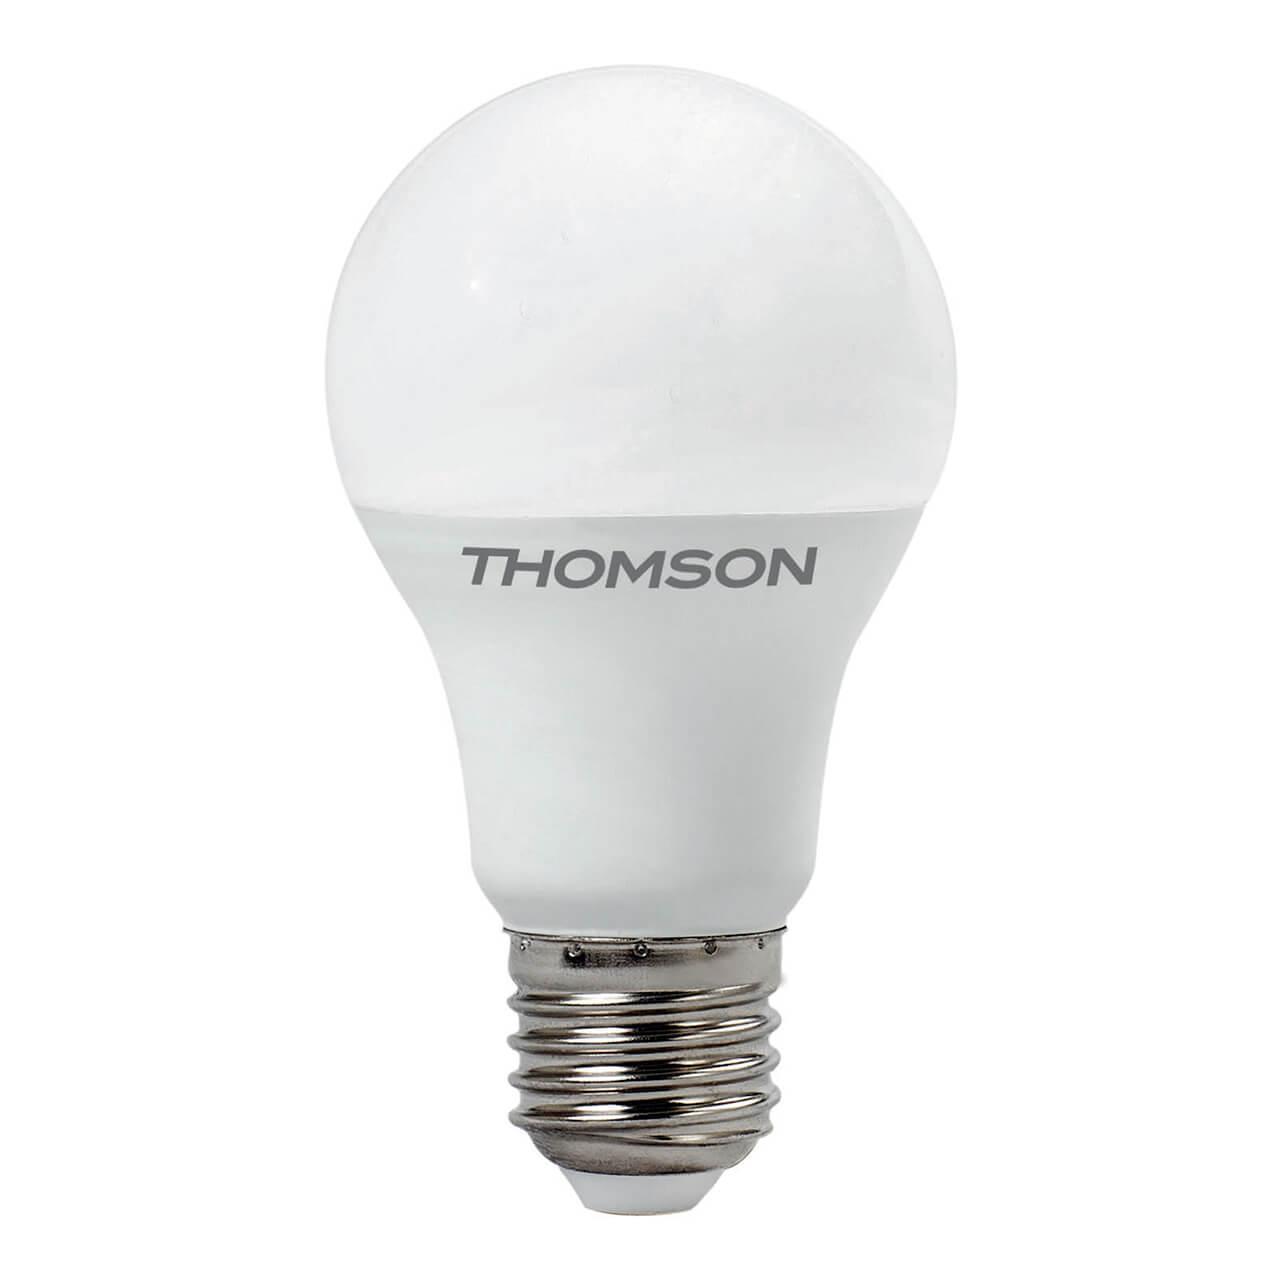 TH-B2008 Лампа светодиодная E27 13W 4000K груша матовая Thomson